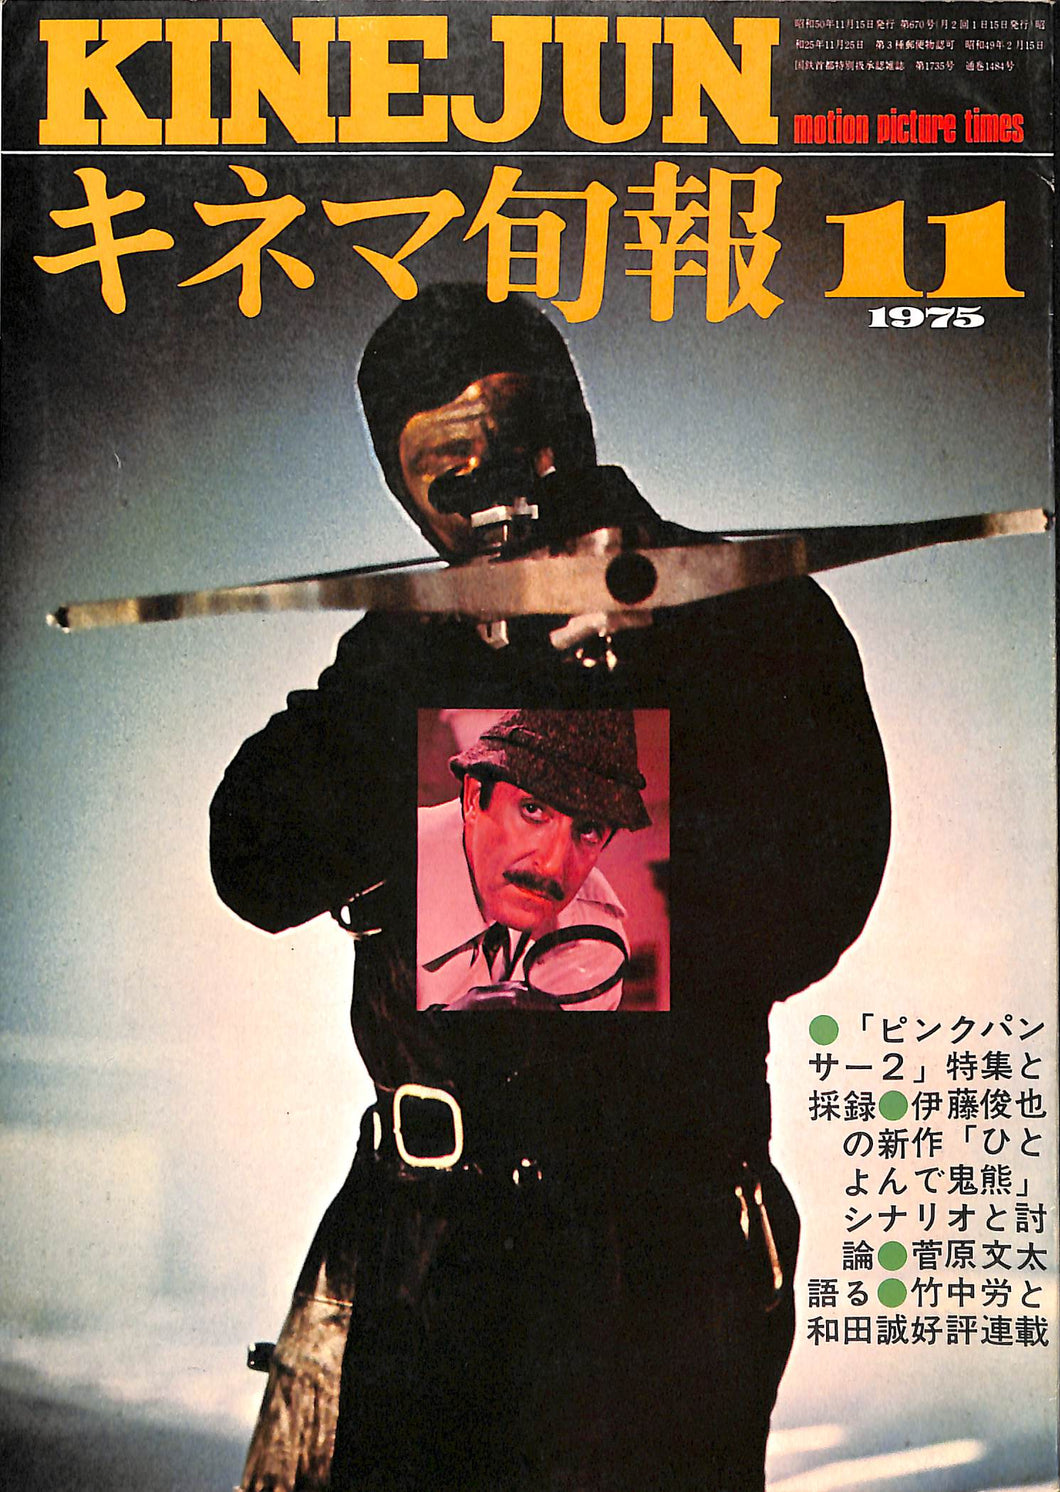 キネマ旬報 1975年 11月下旬号 表紙の映画 : ピンクパンサー2 (ピーター・セラーズ)